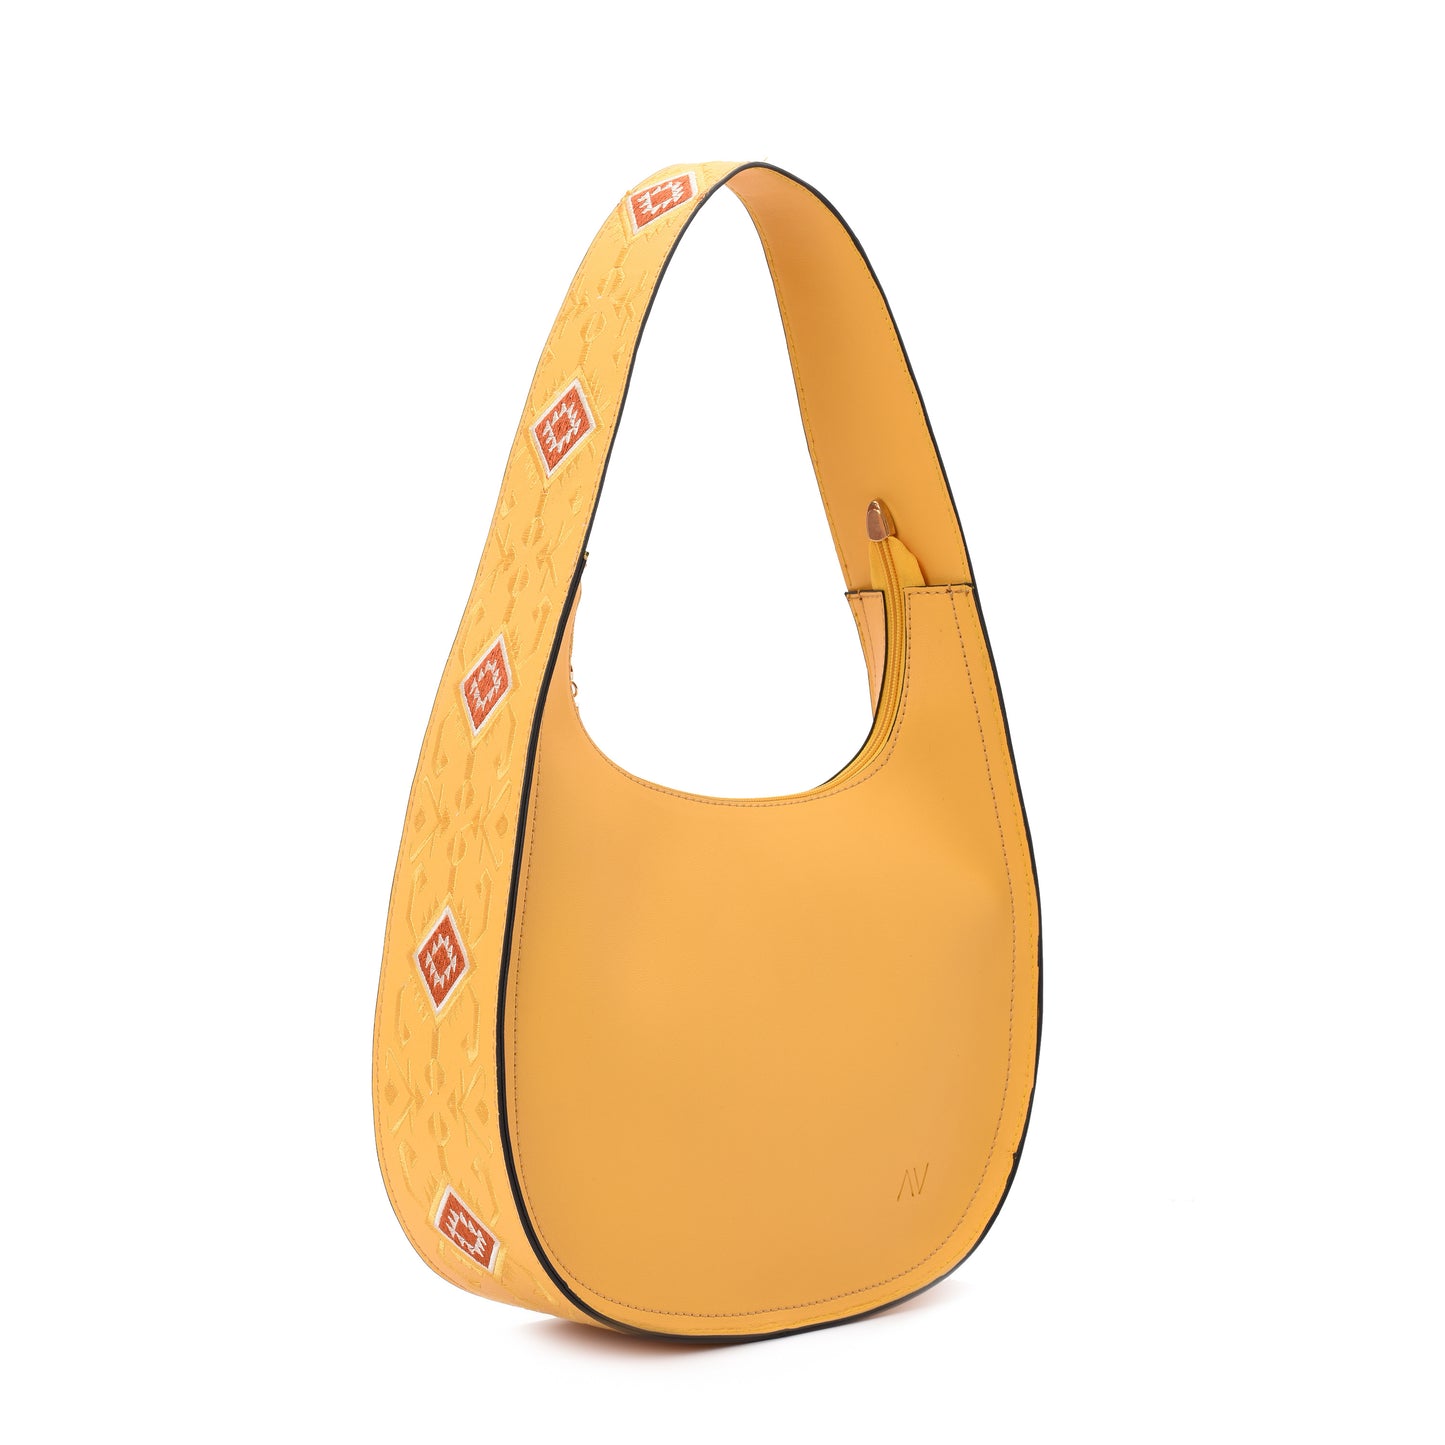 Round Yellow Handbag - Code 911